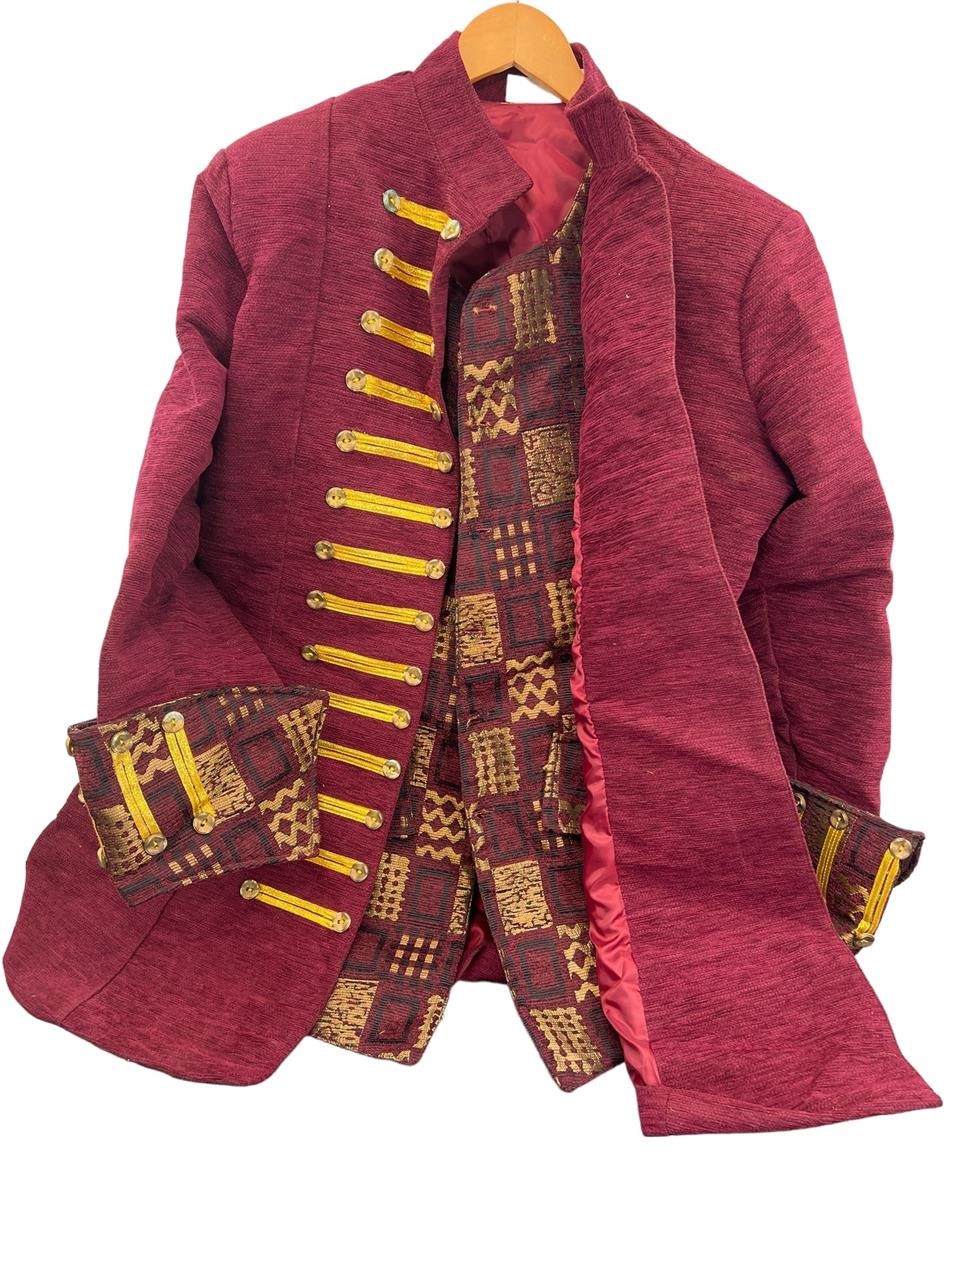 Medieval Renaissance Vest & Coat - Donal Costume